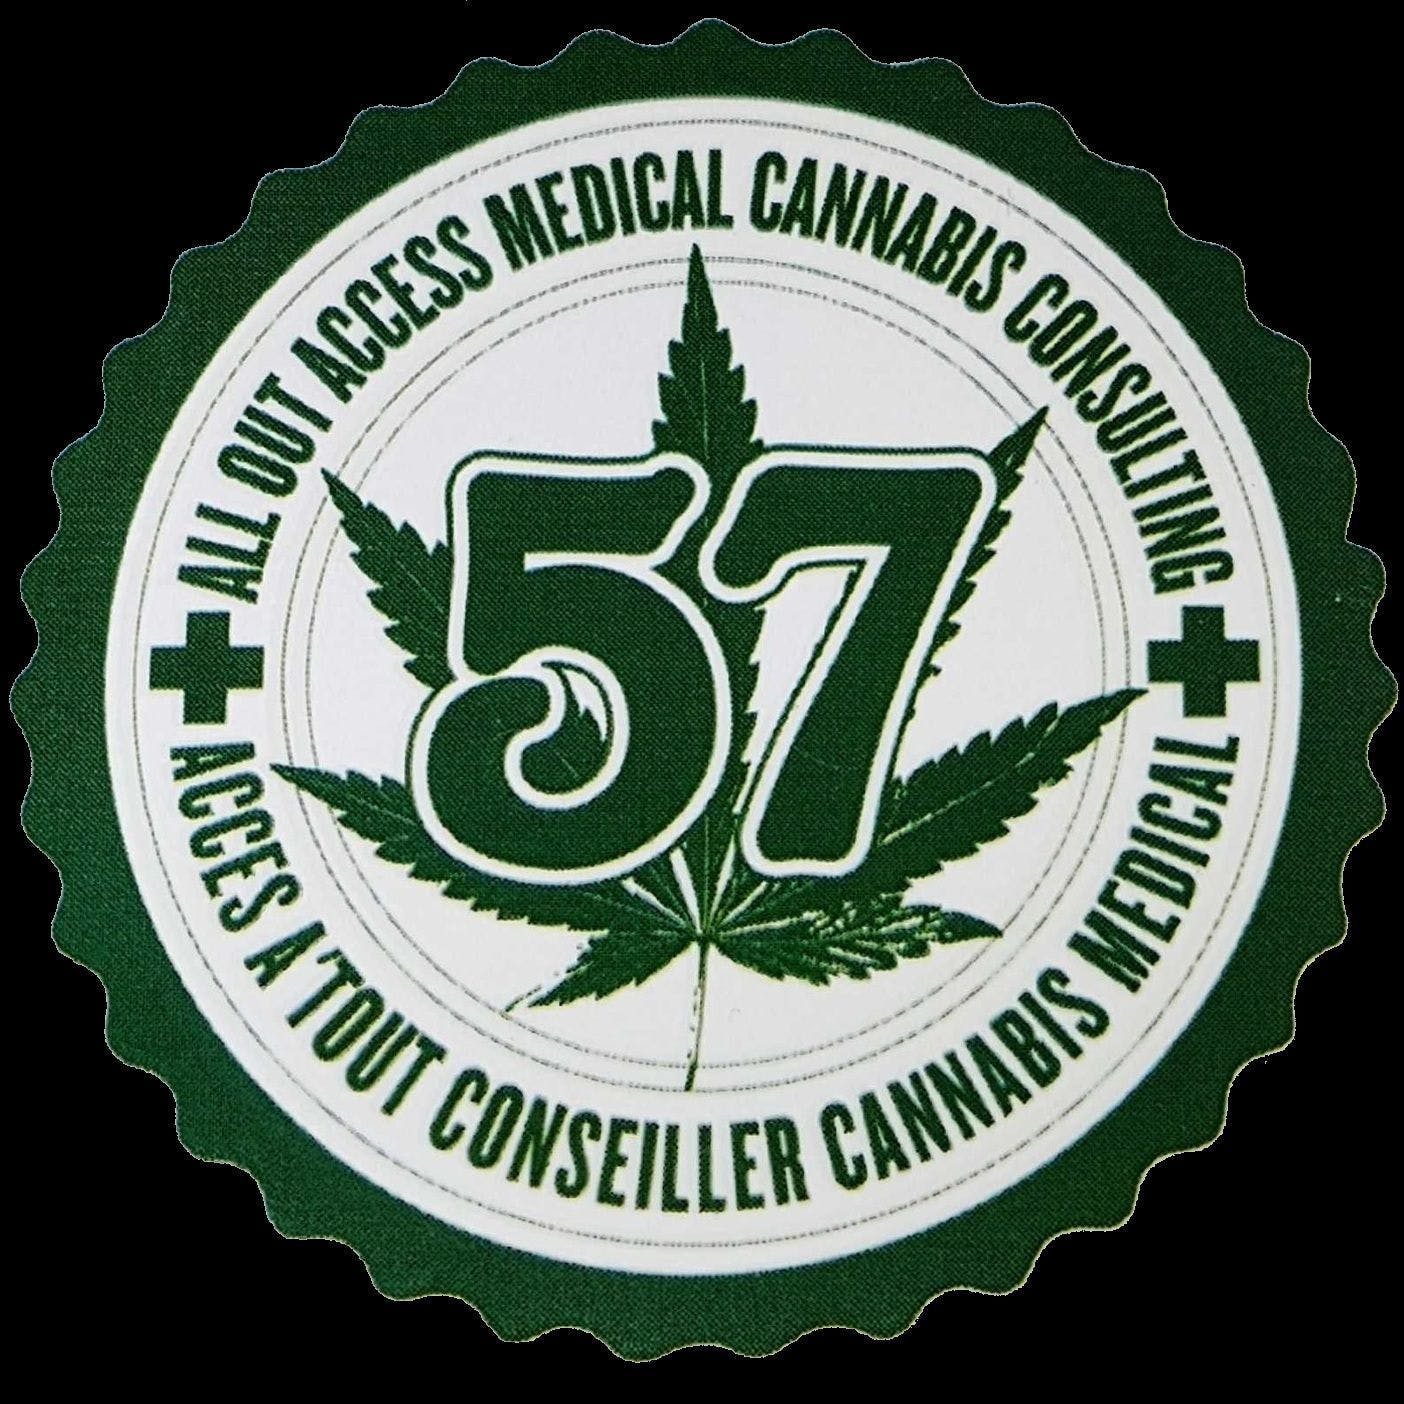 Le 57 - Medical Marijuana Doctors - Cannabizme.com